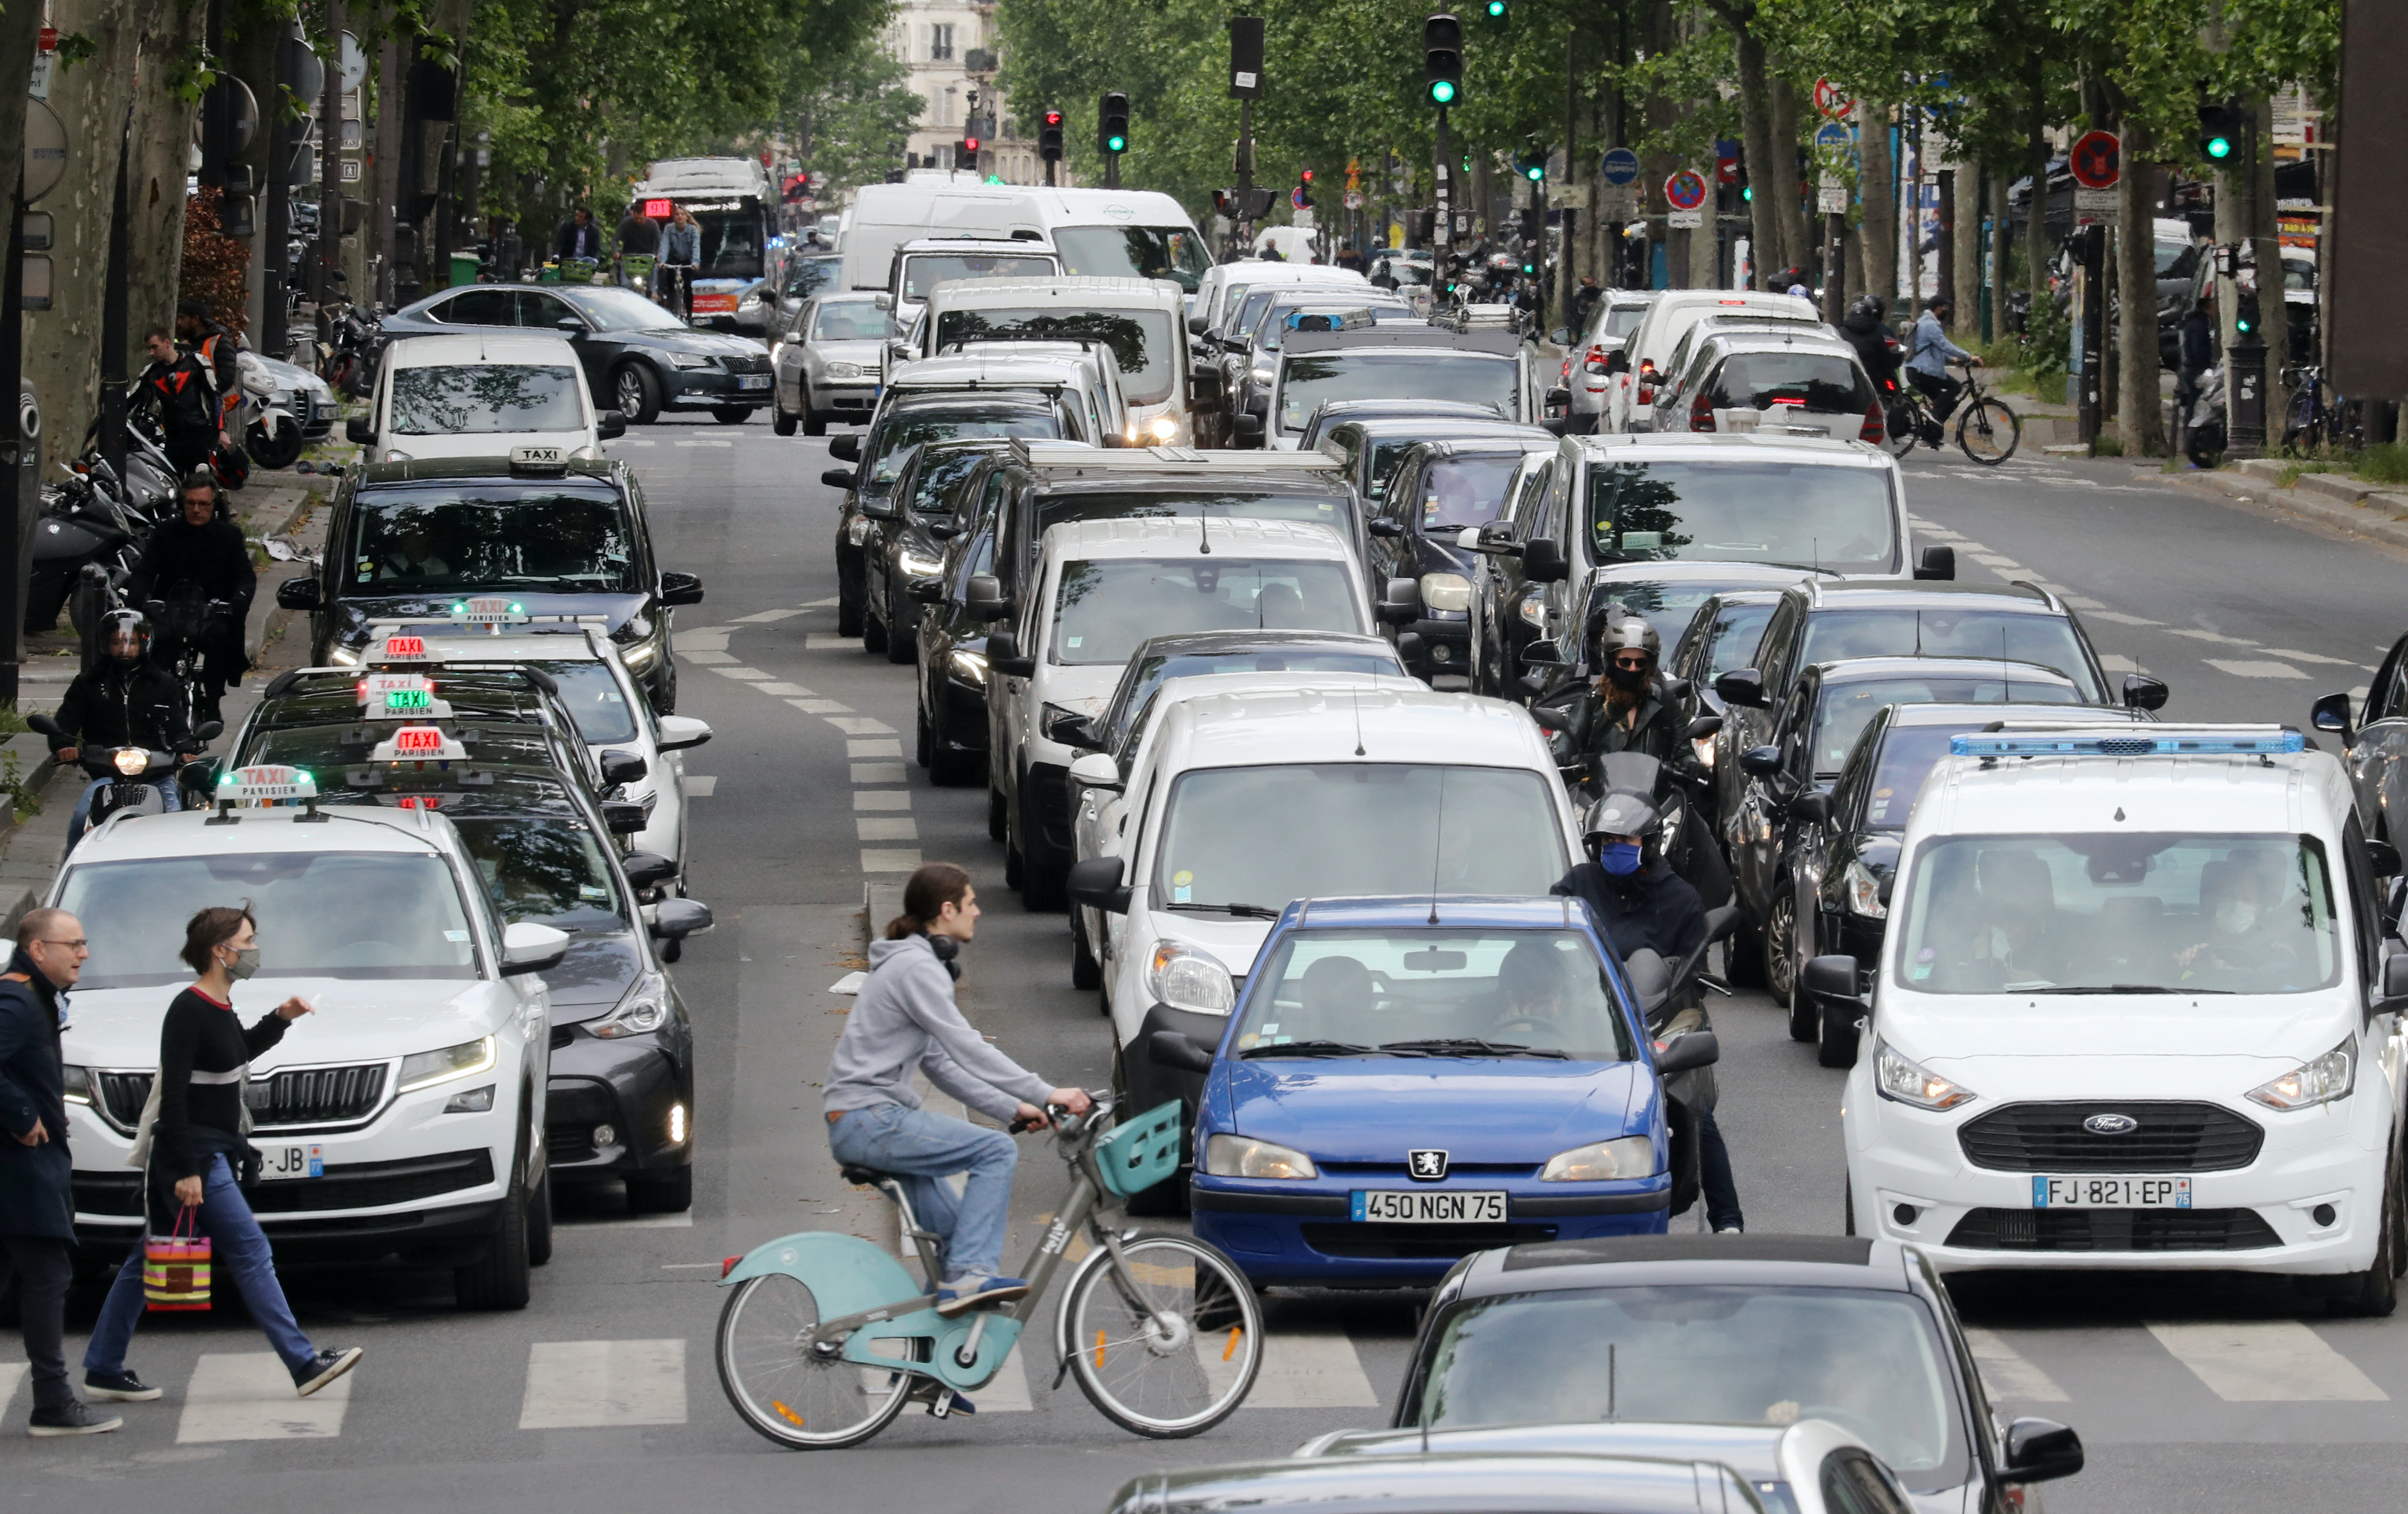 Paris veut réduire drastiquement la circulation automobile dans les centres-villes